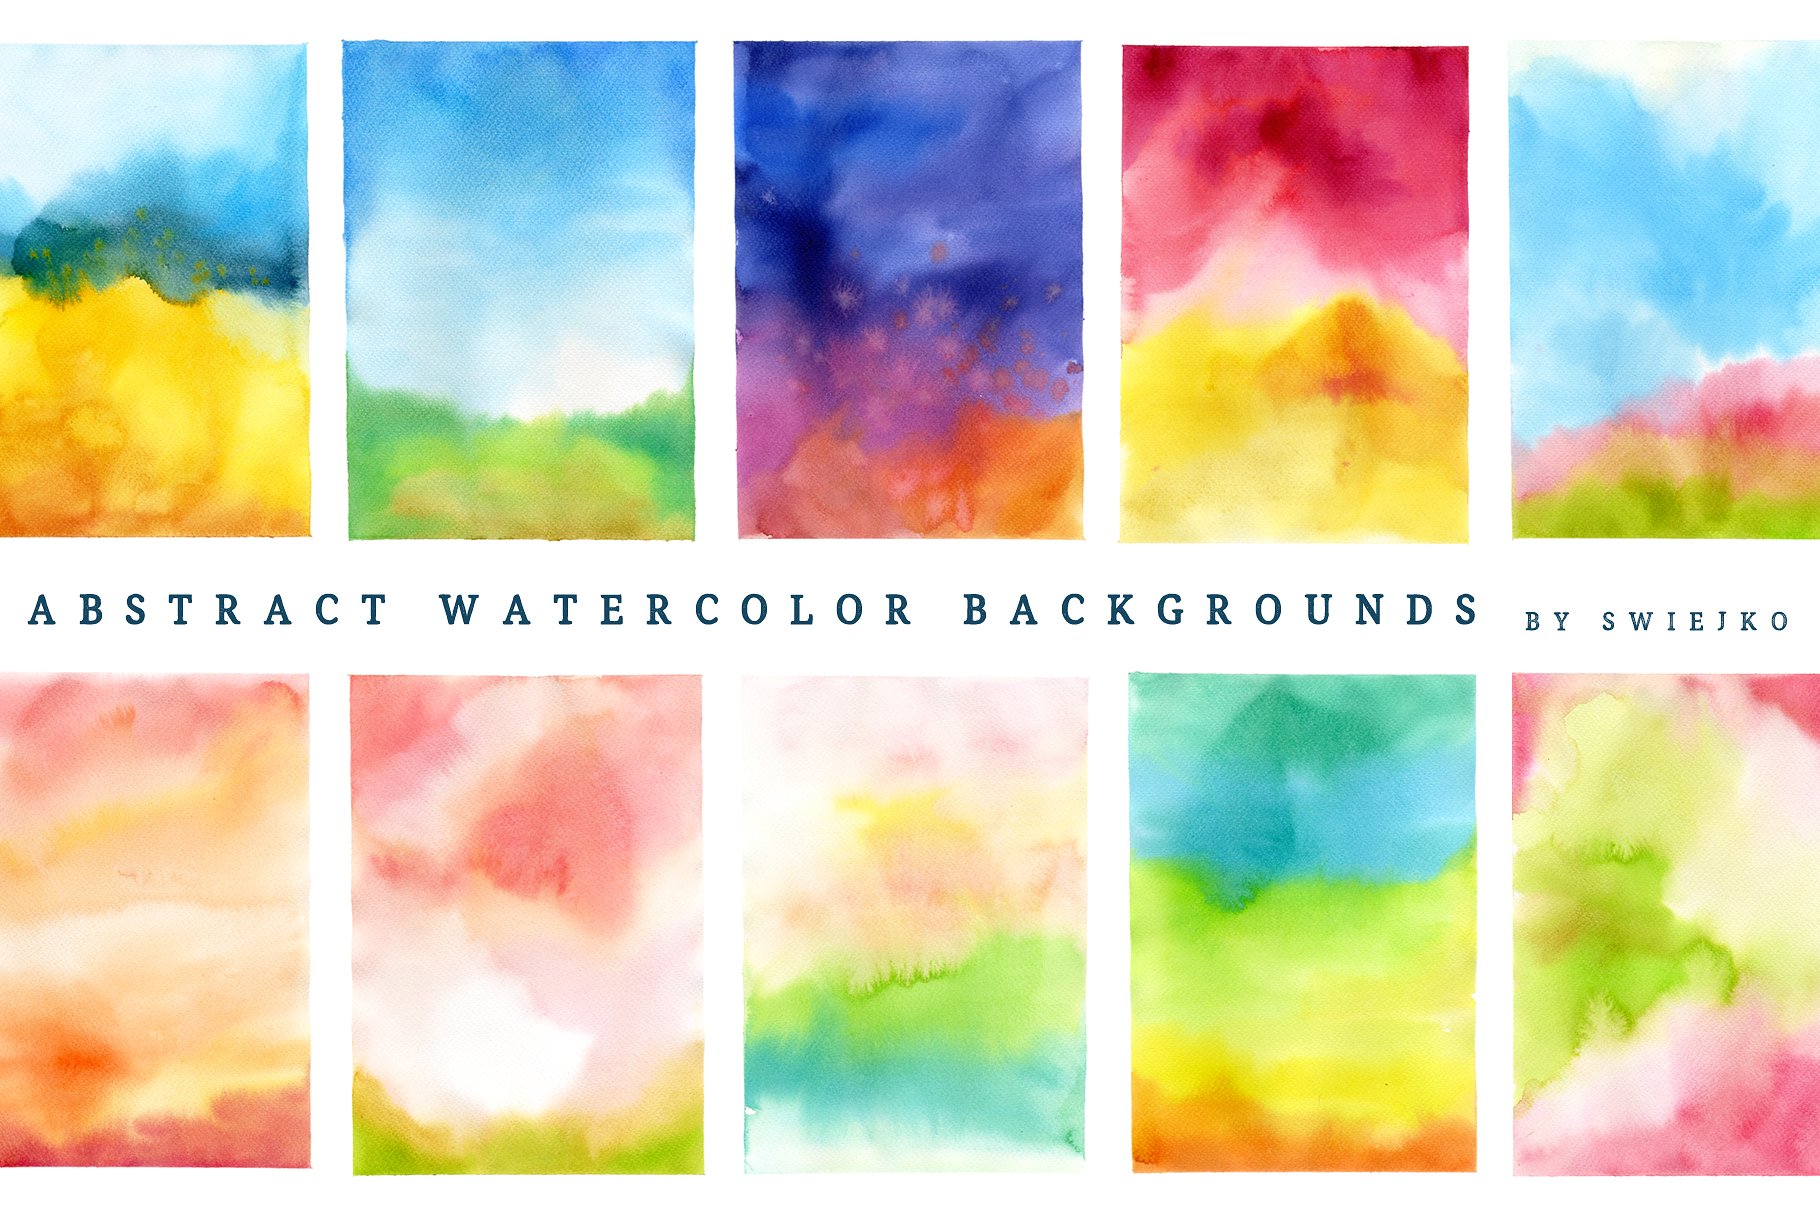 抽象印象派水彩背景 Abstract Watercolor Background插图(1)